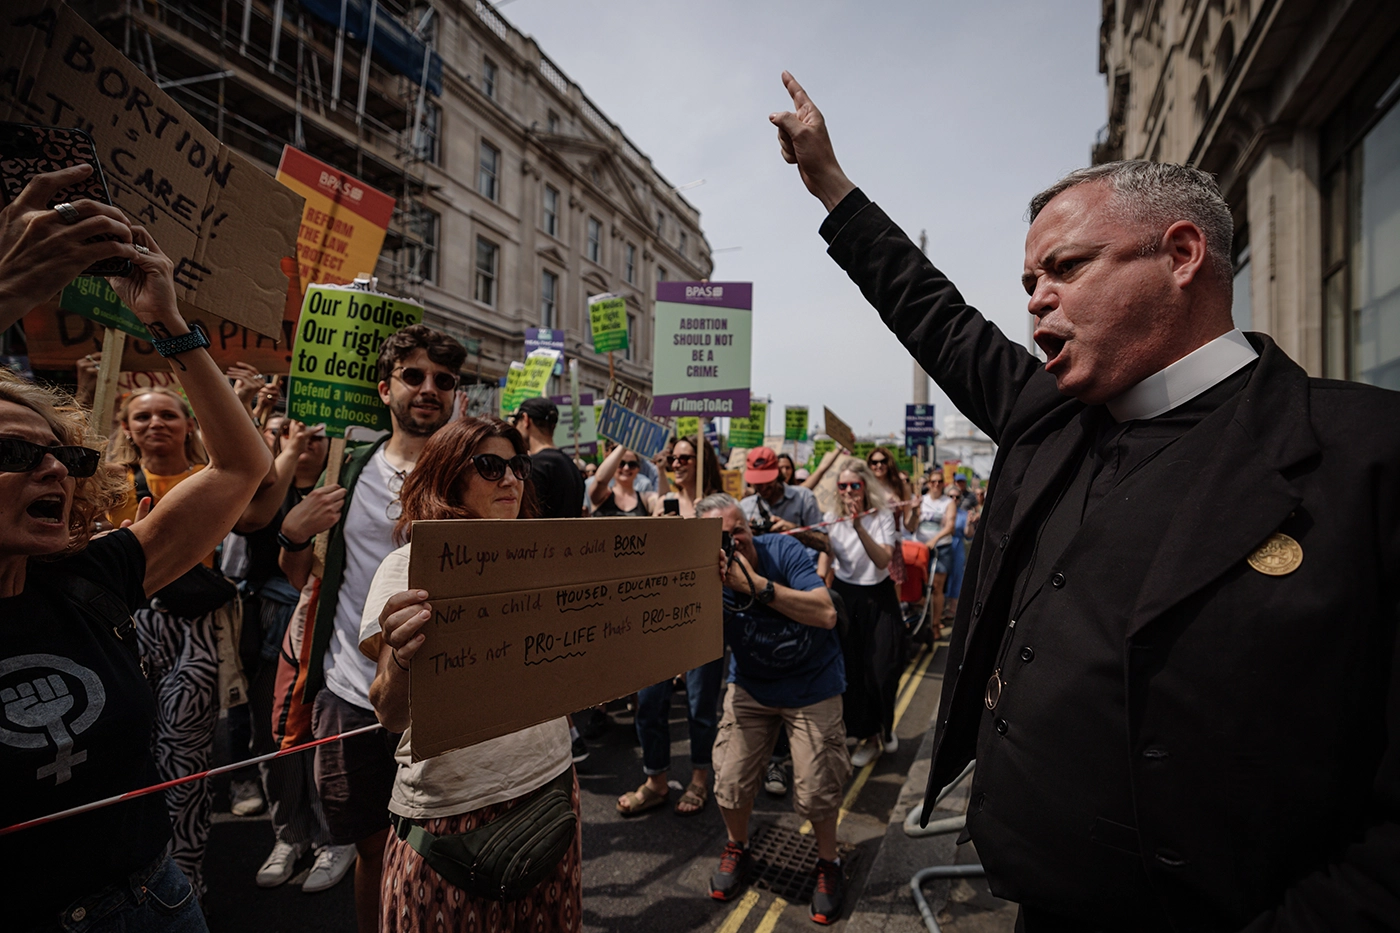 Марш протеста с требованием изменить законодательство об абортах в Британии. Фото дня